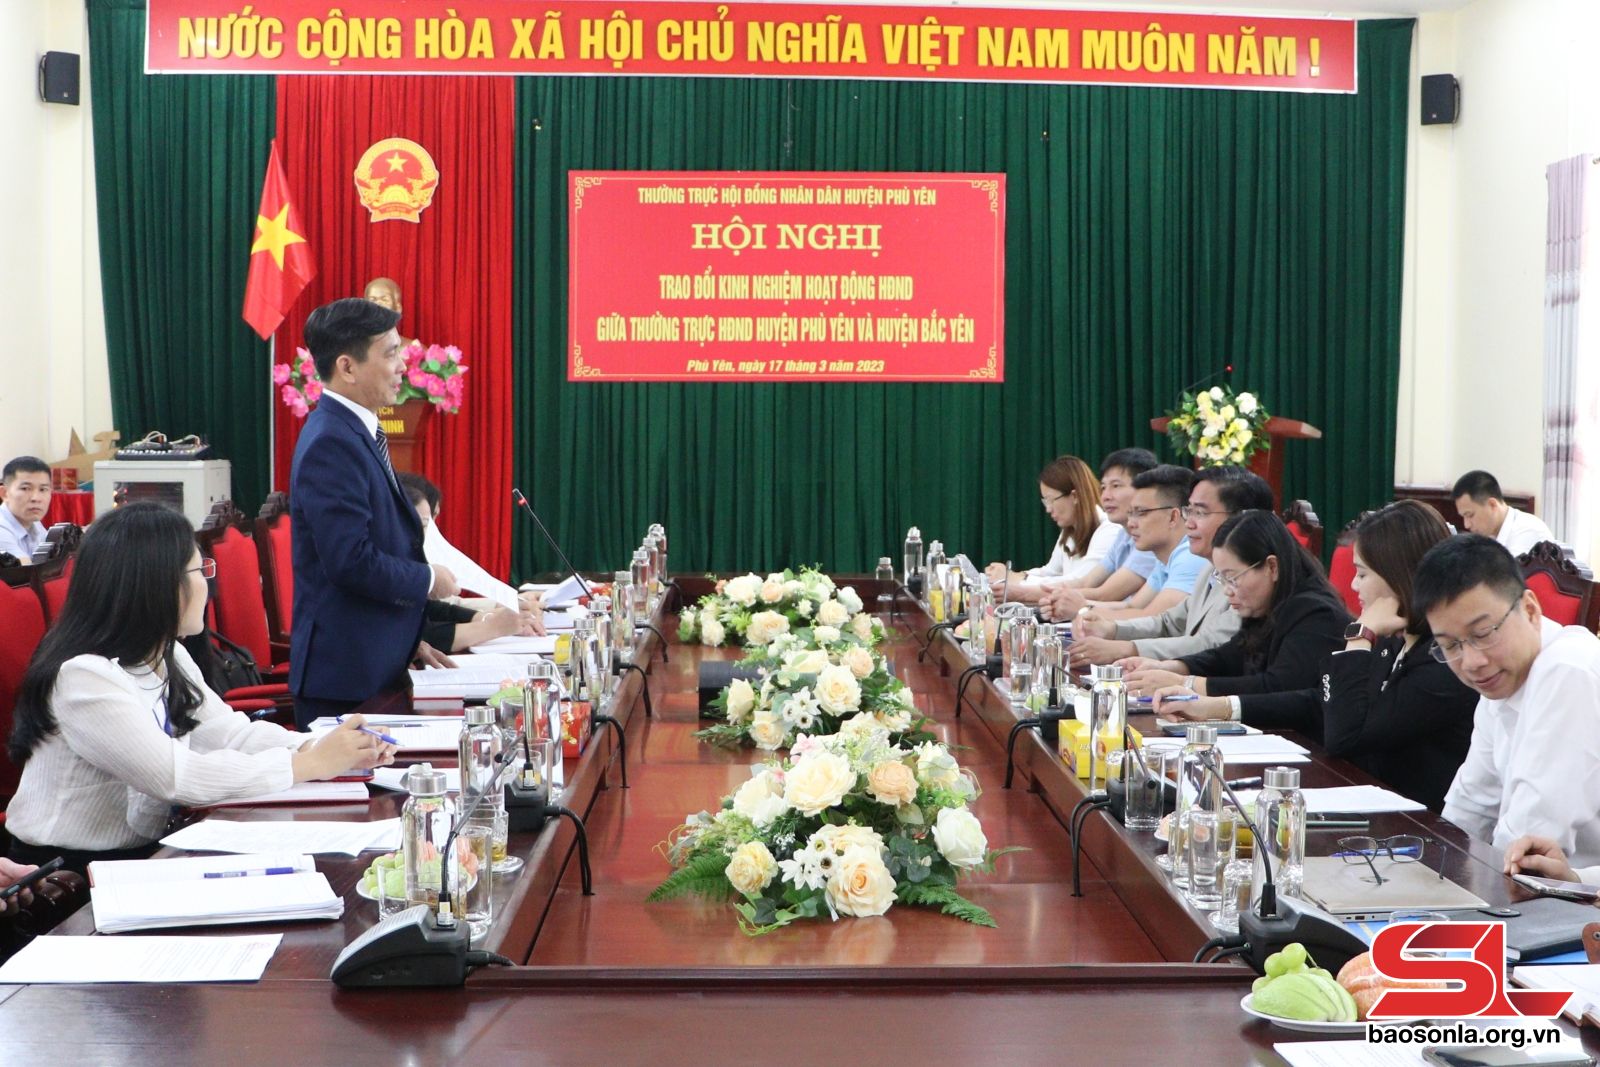 Ngày 17/3, Đoàn công tác của Thường trực HĐND huyện Bắc Yên đã trao đổi kinh nghiệm hoạt động HĐND tại huyện Phù Yên.